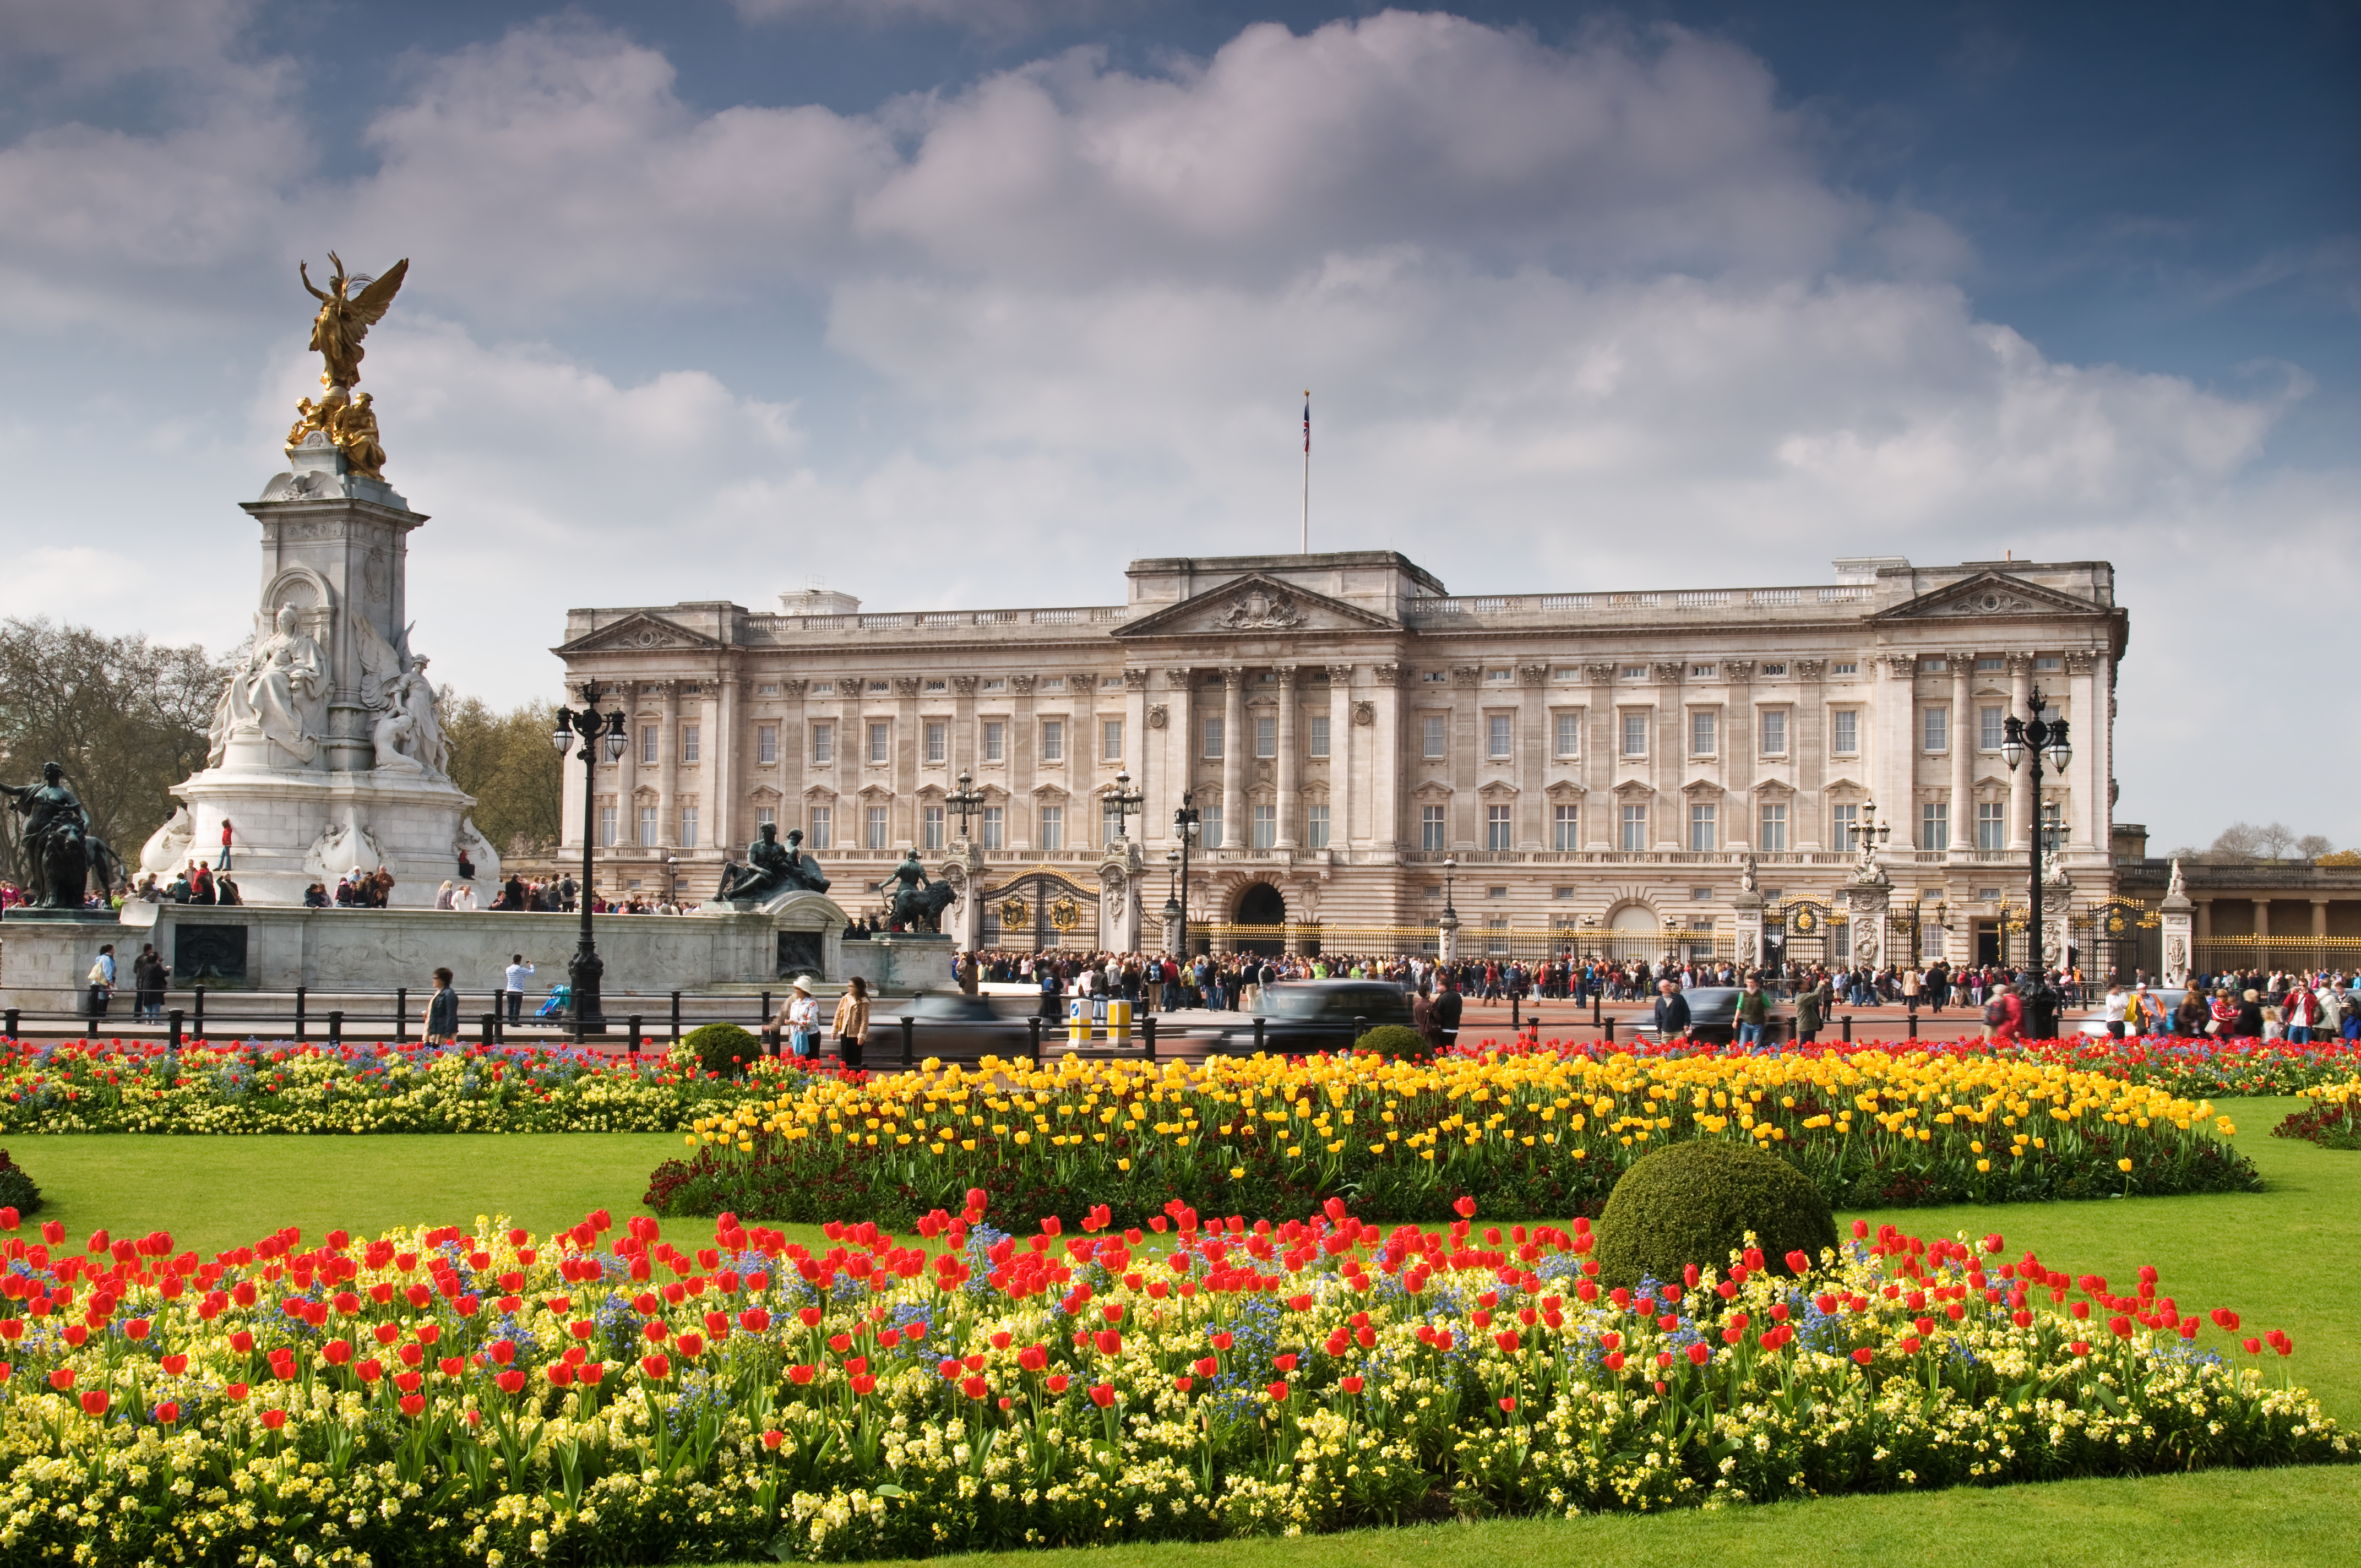 Buckingham Palace #19